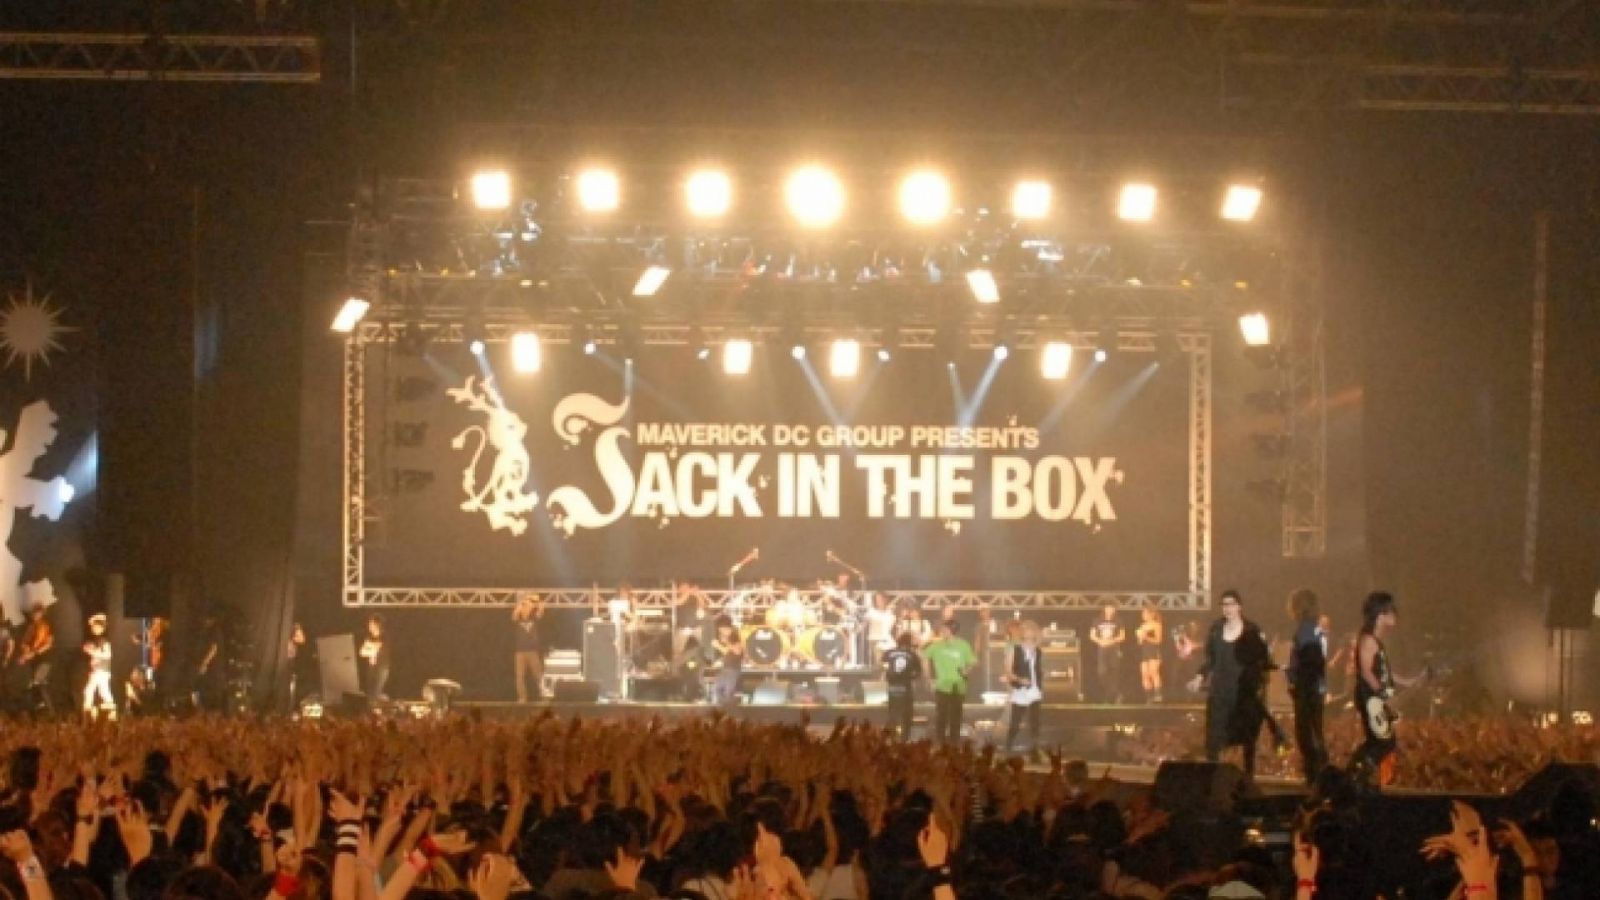 JACK IN THE BOX été 2009 - Partie 3 © Maverick DC Group